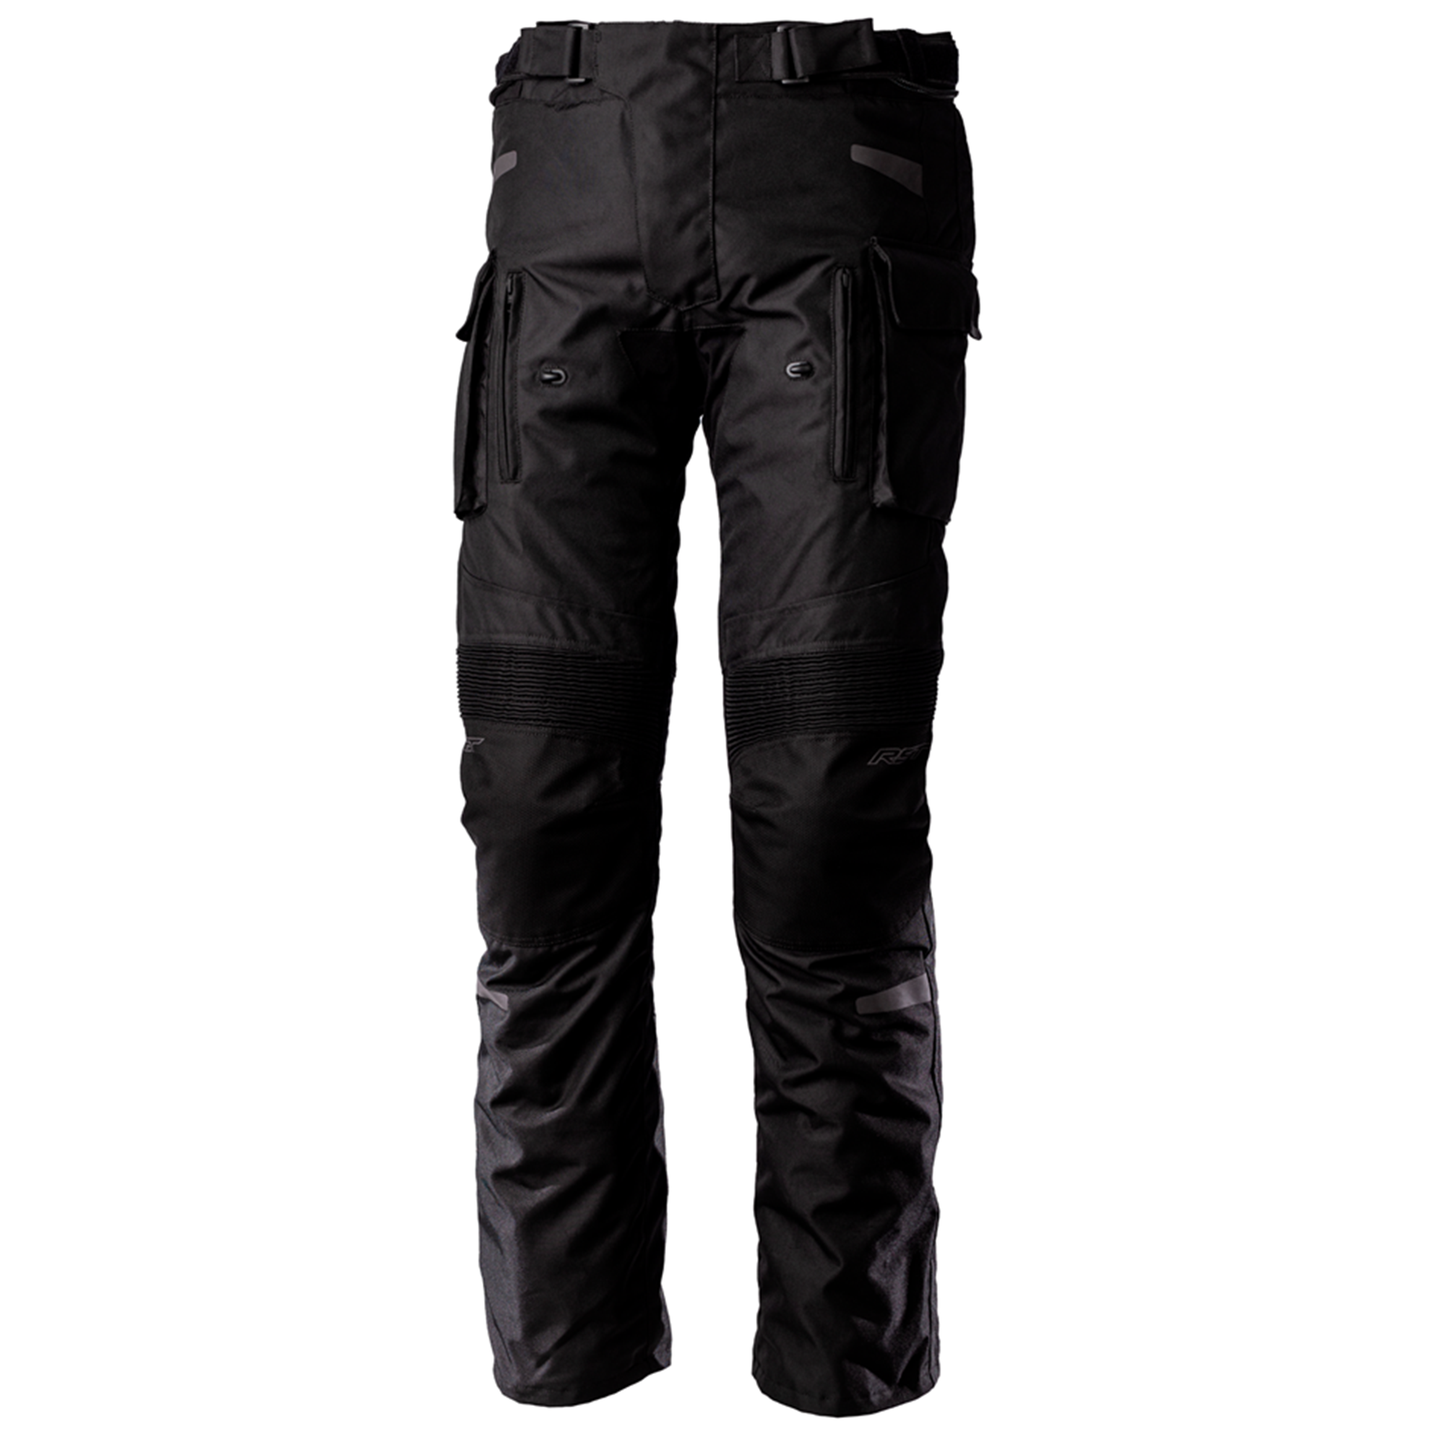 RST Endurance Men's Textile Jeans - Black